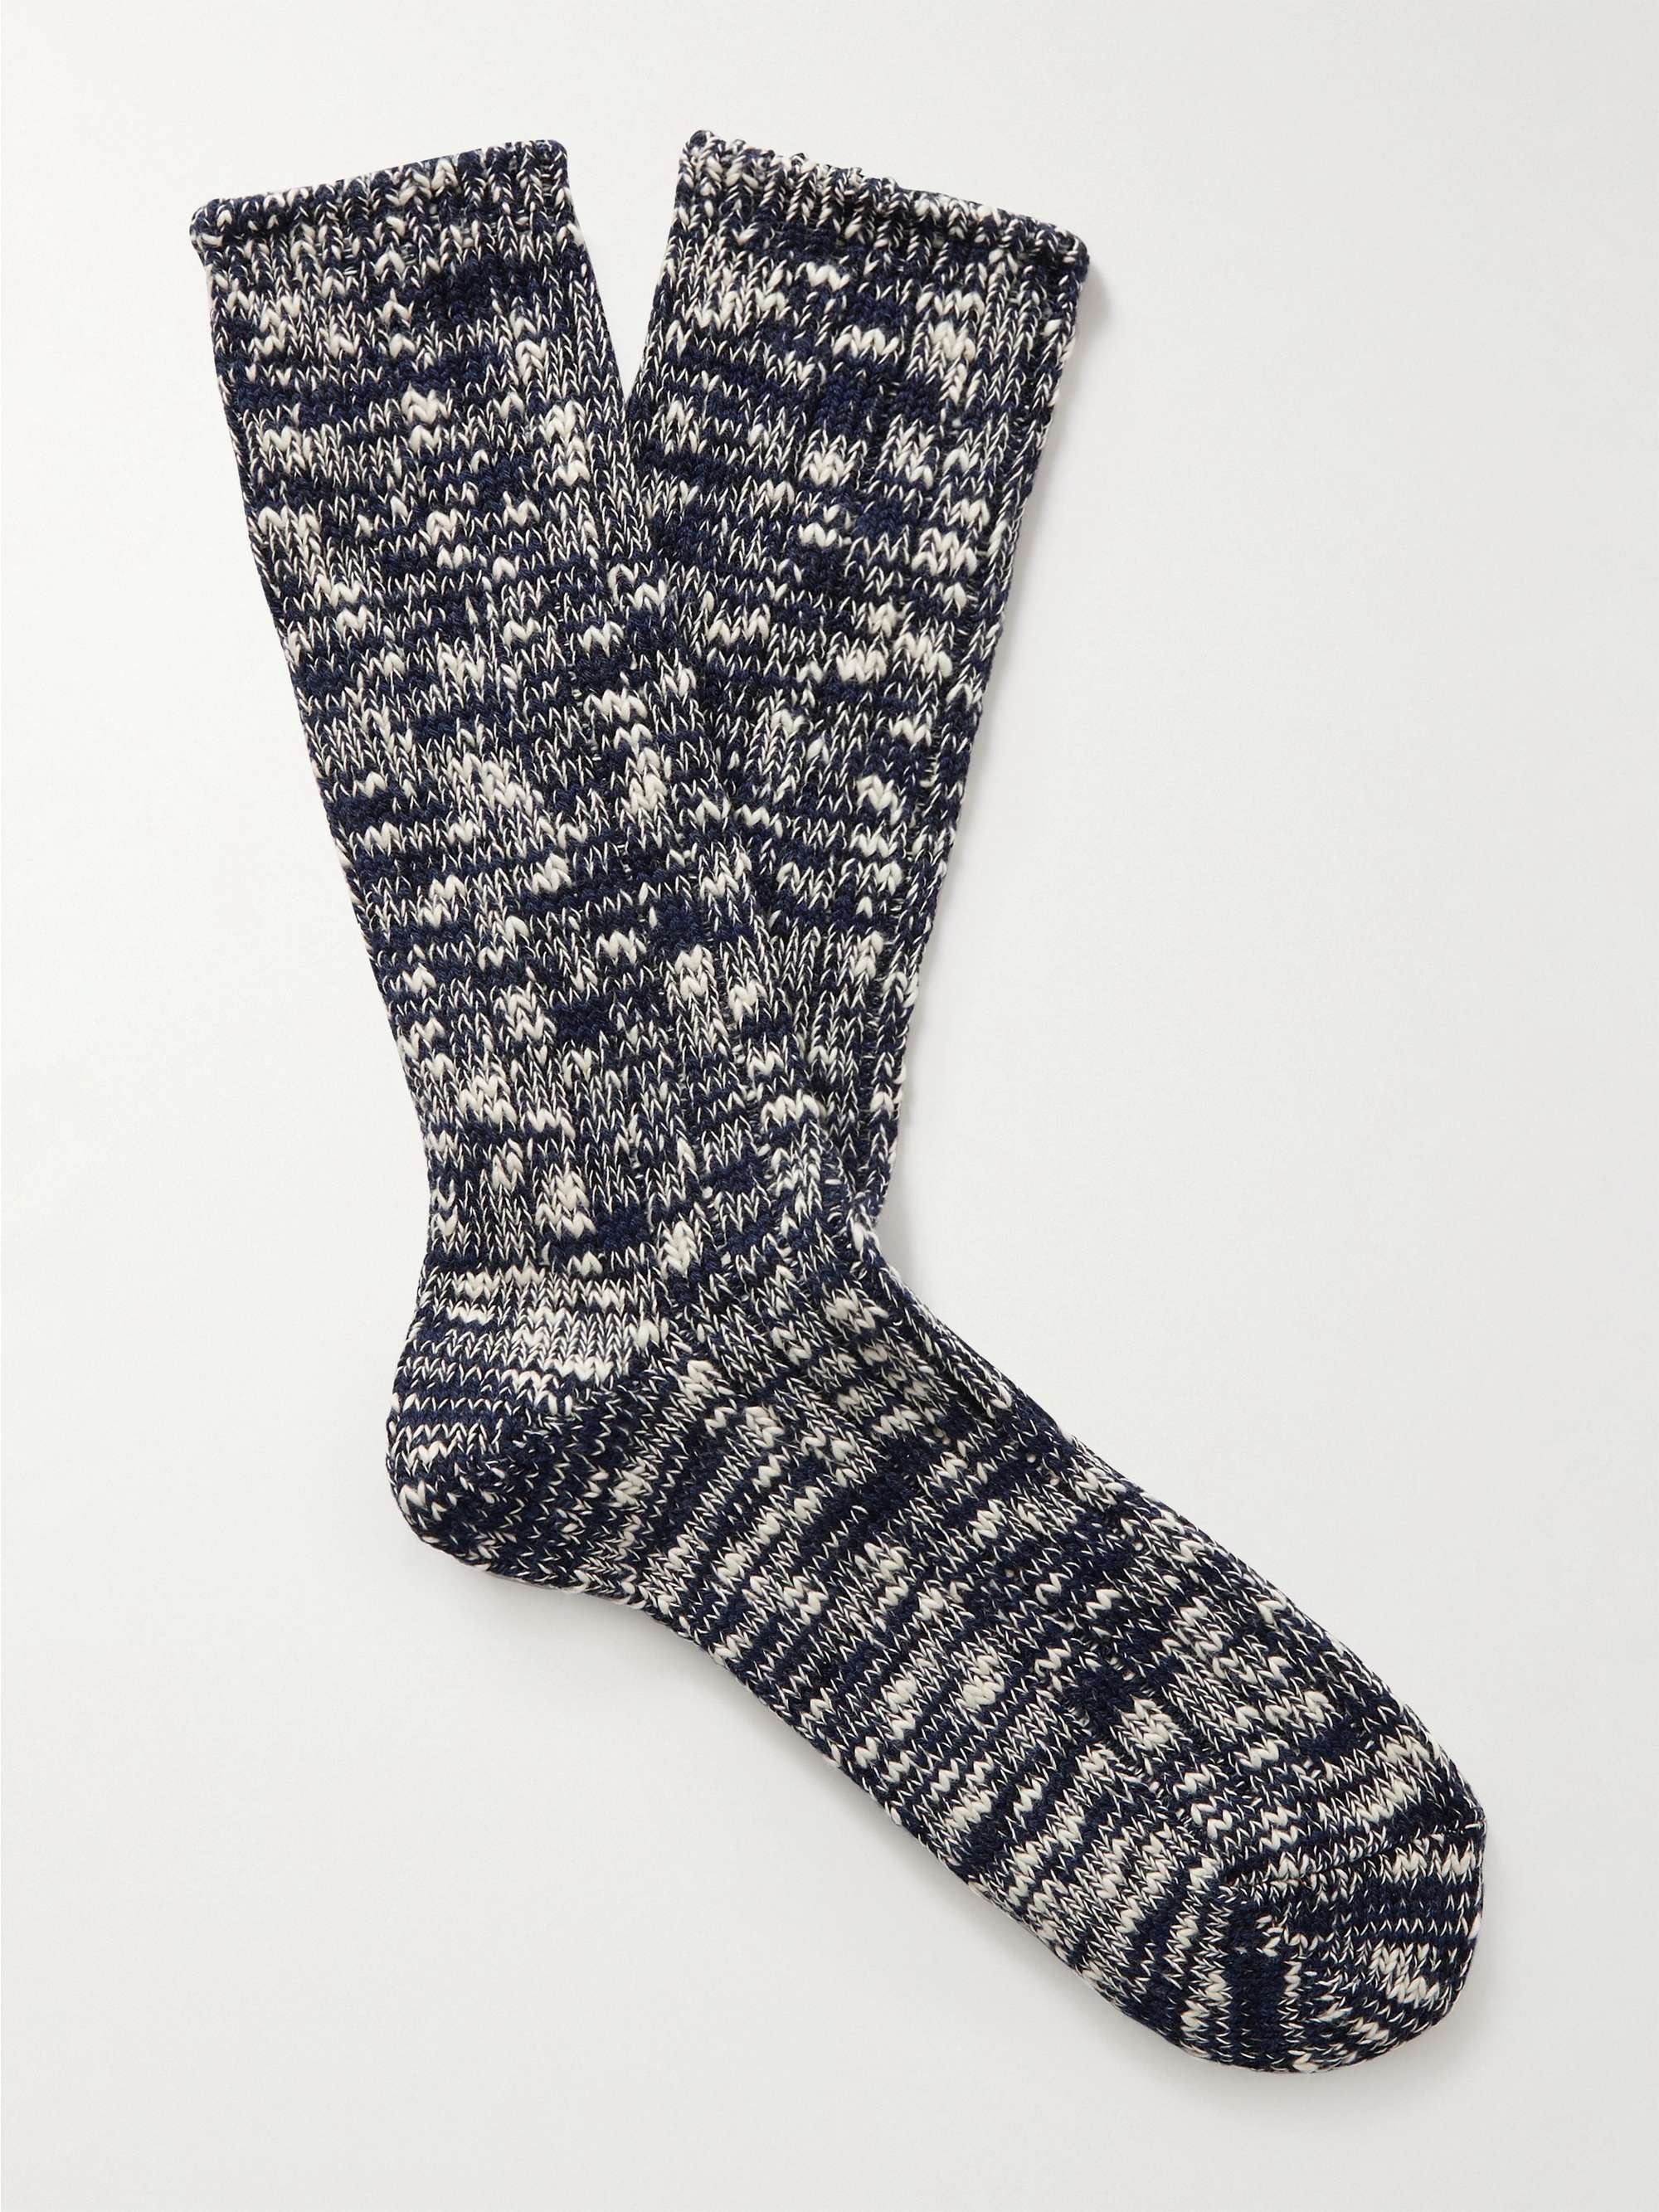 ANONYMOUS ISM Mélange Cotton-Blend Socks | MR PORTER